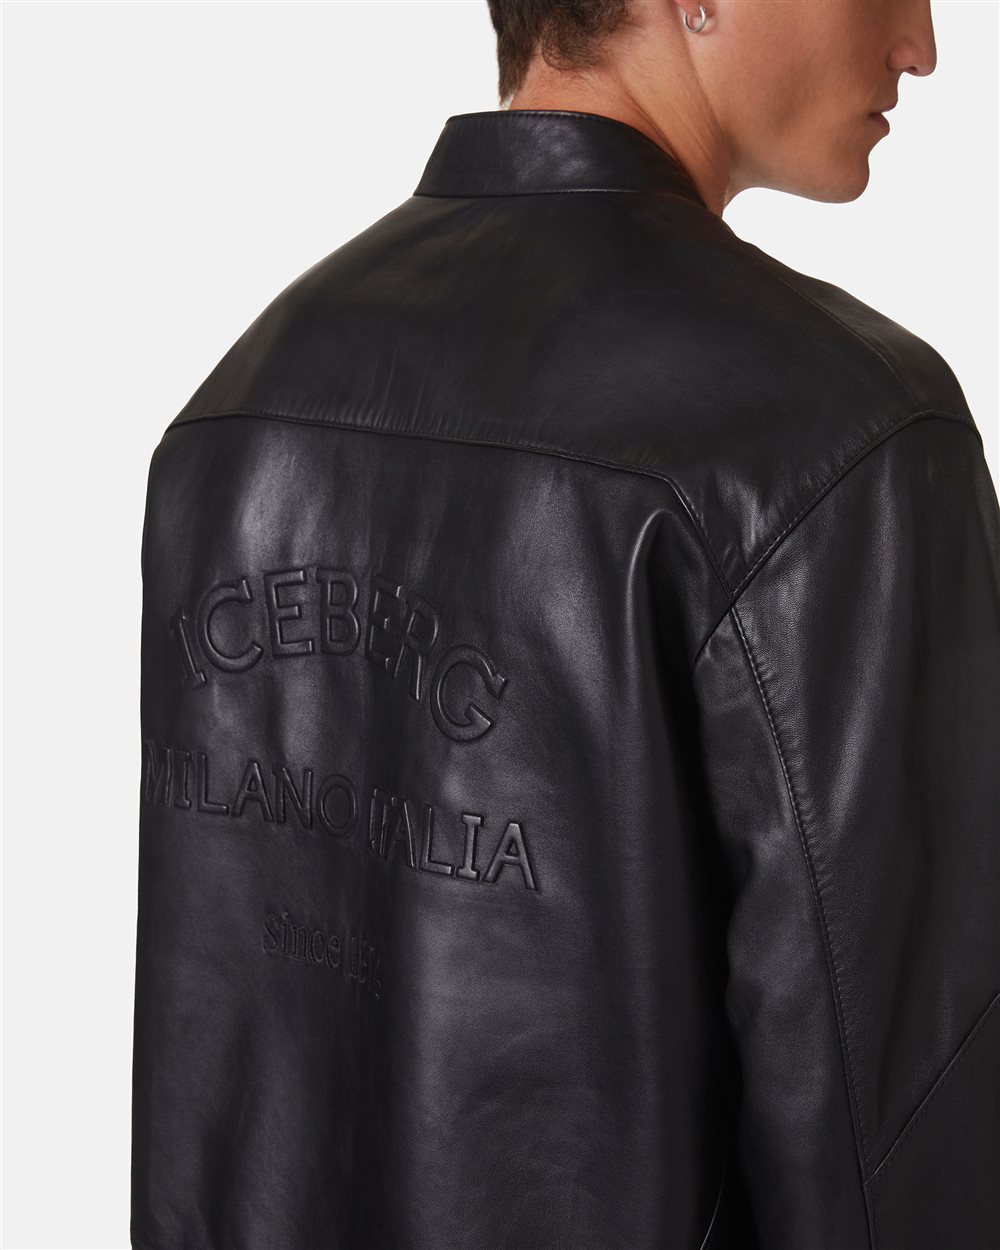 Biker jacket with logo - Iceberg - Official Website